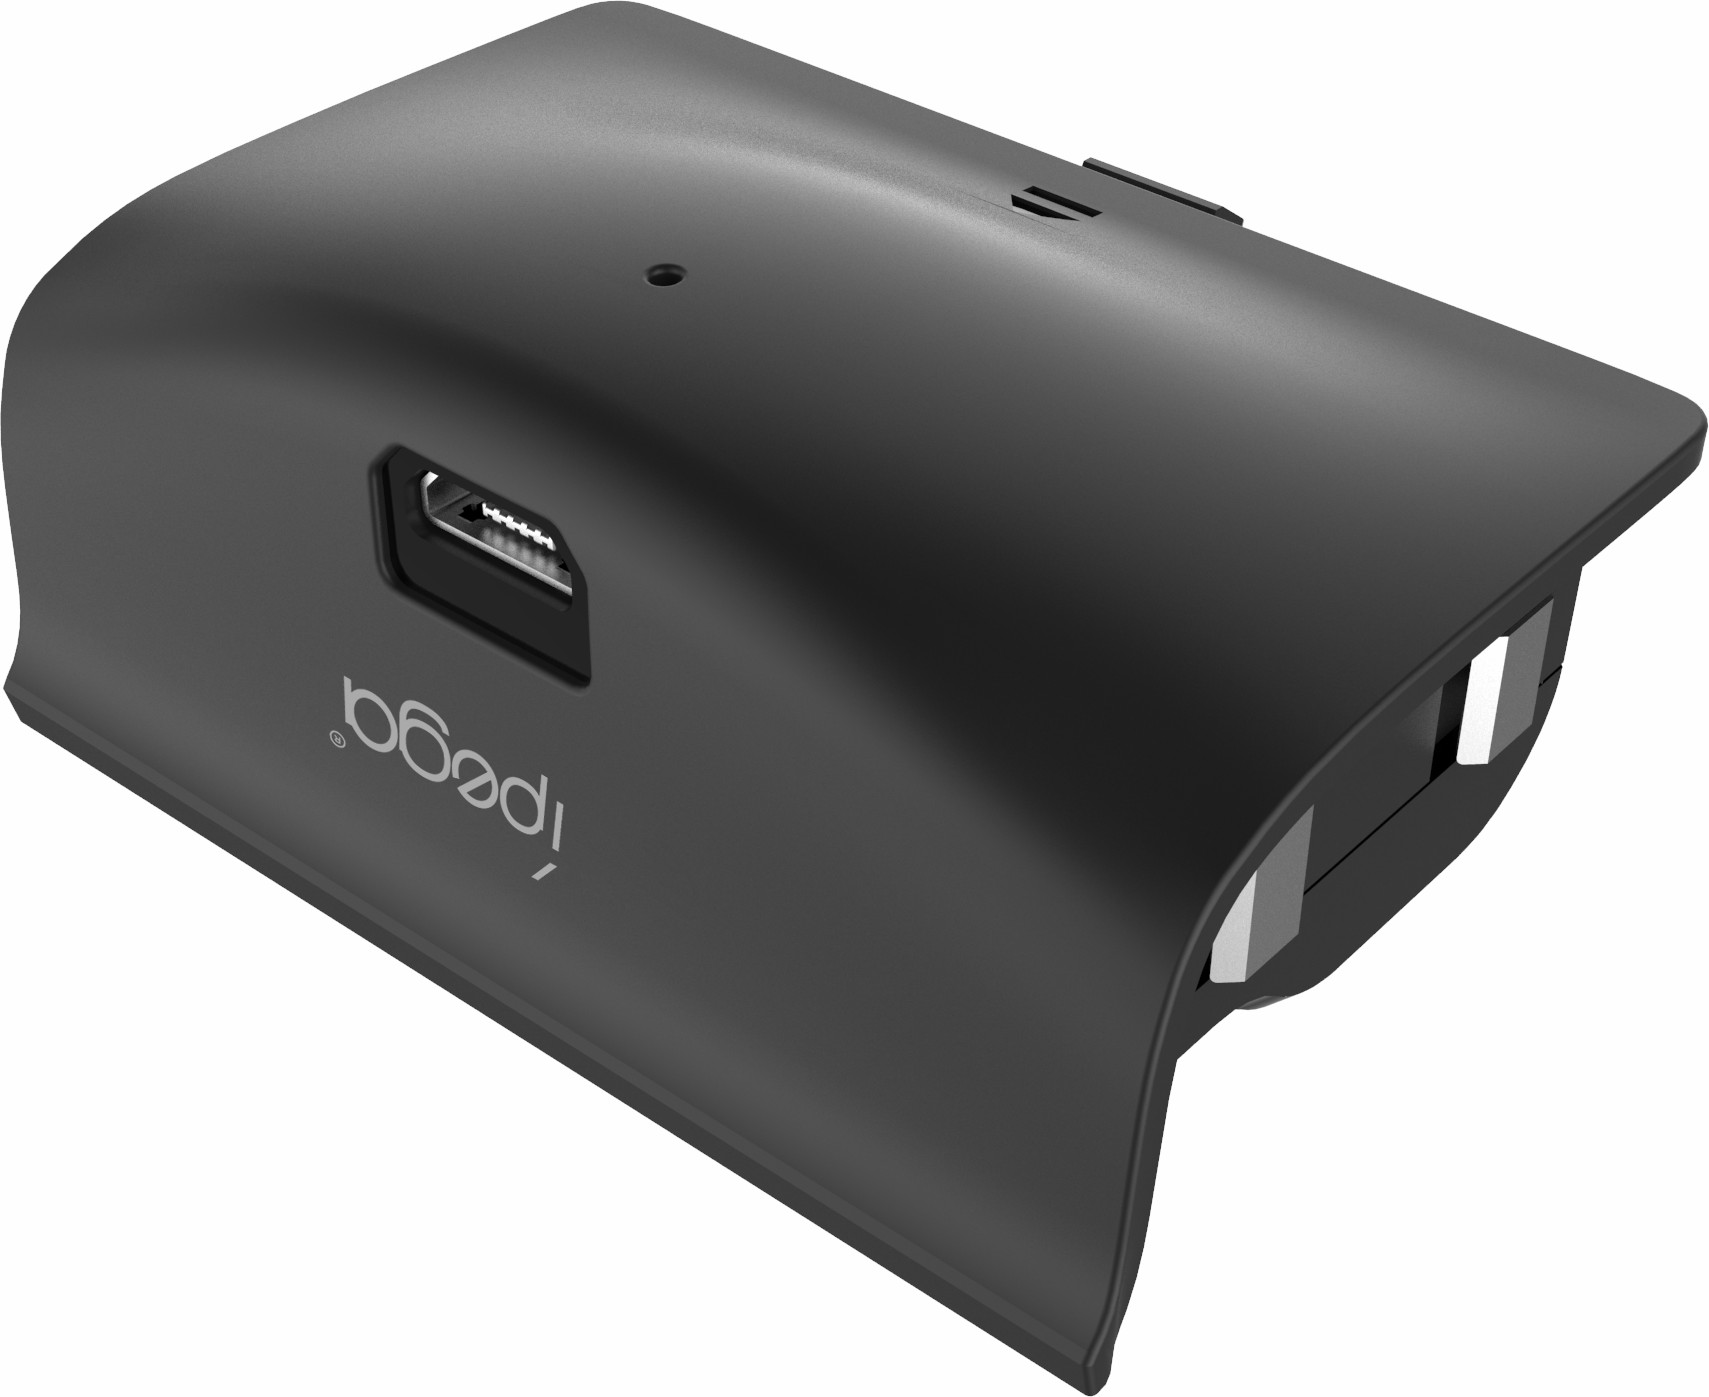 Ipega-XB001 Xbox synchronous charging set